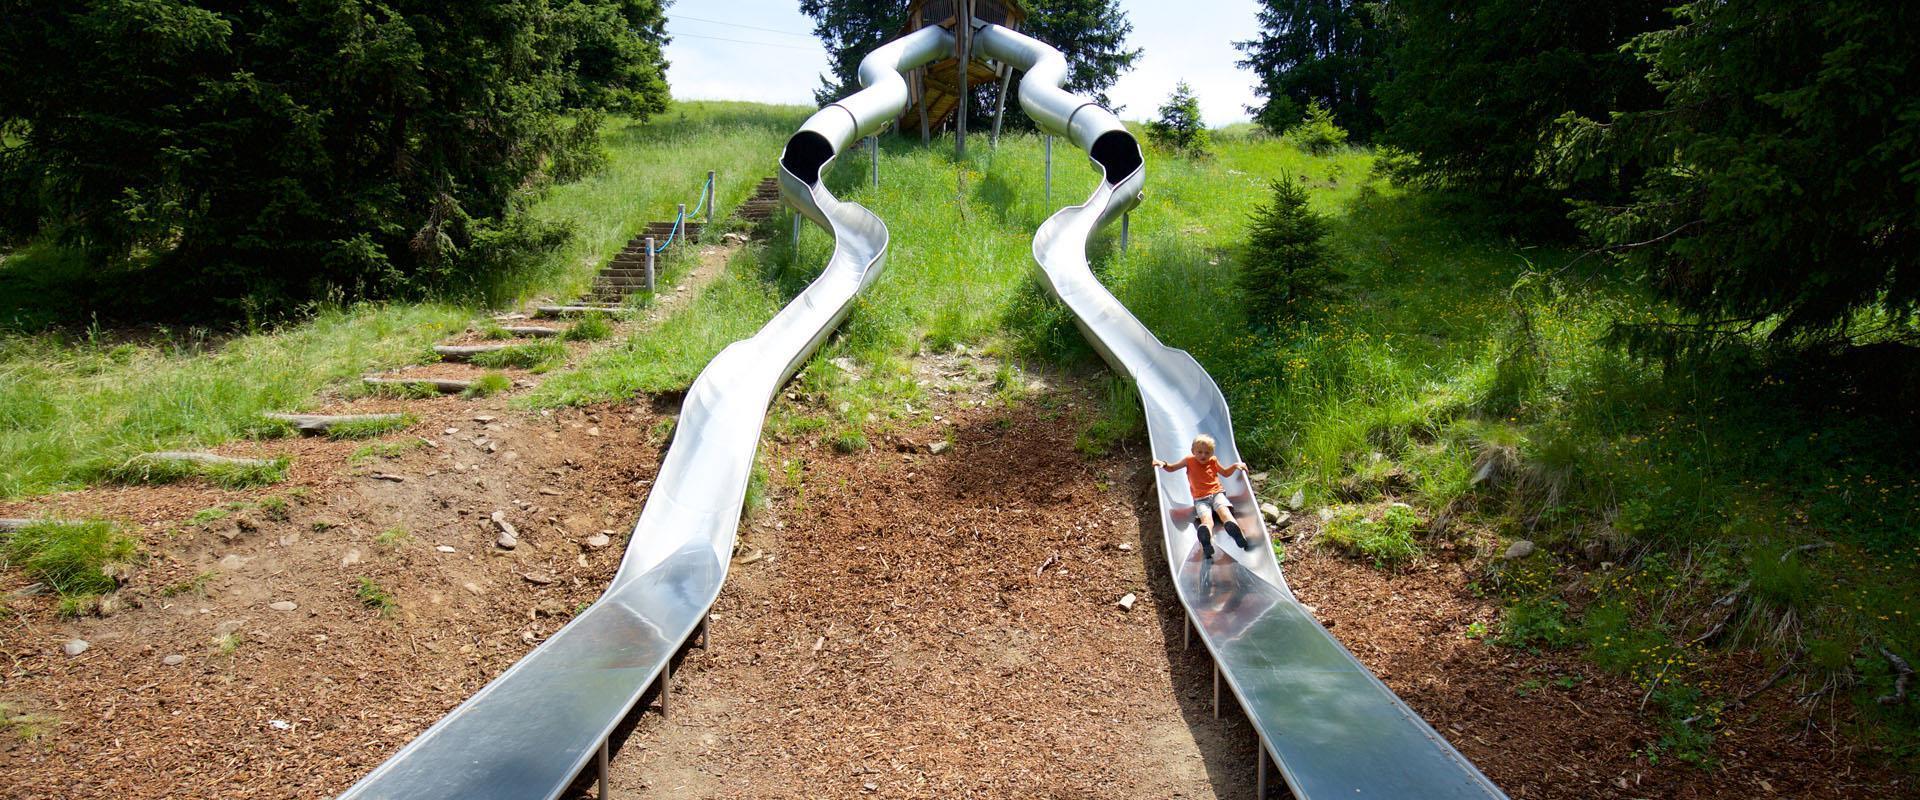 Giant's slide